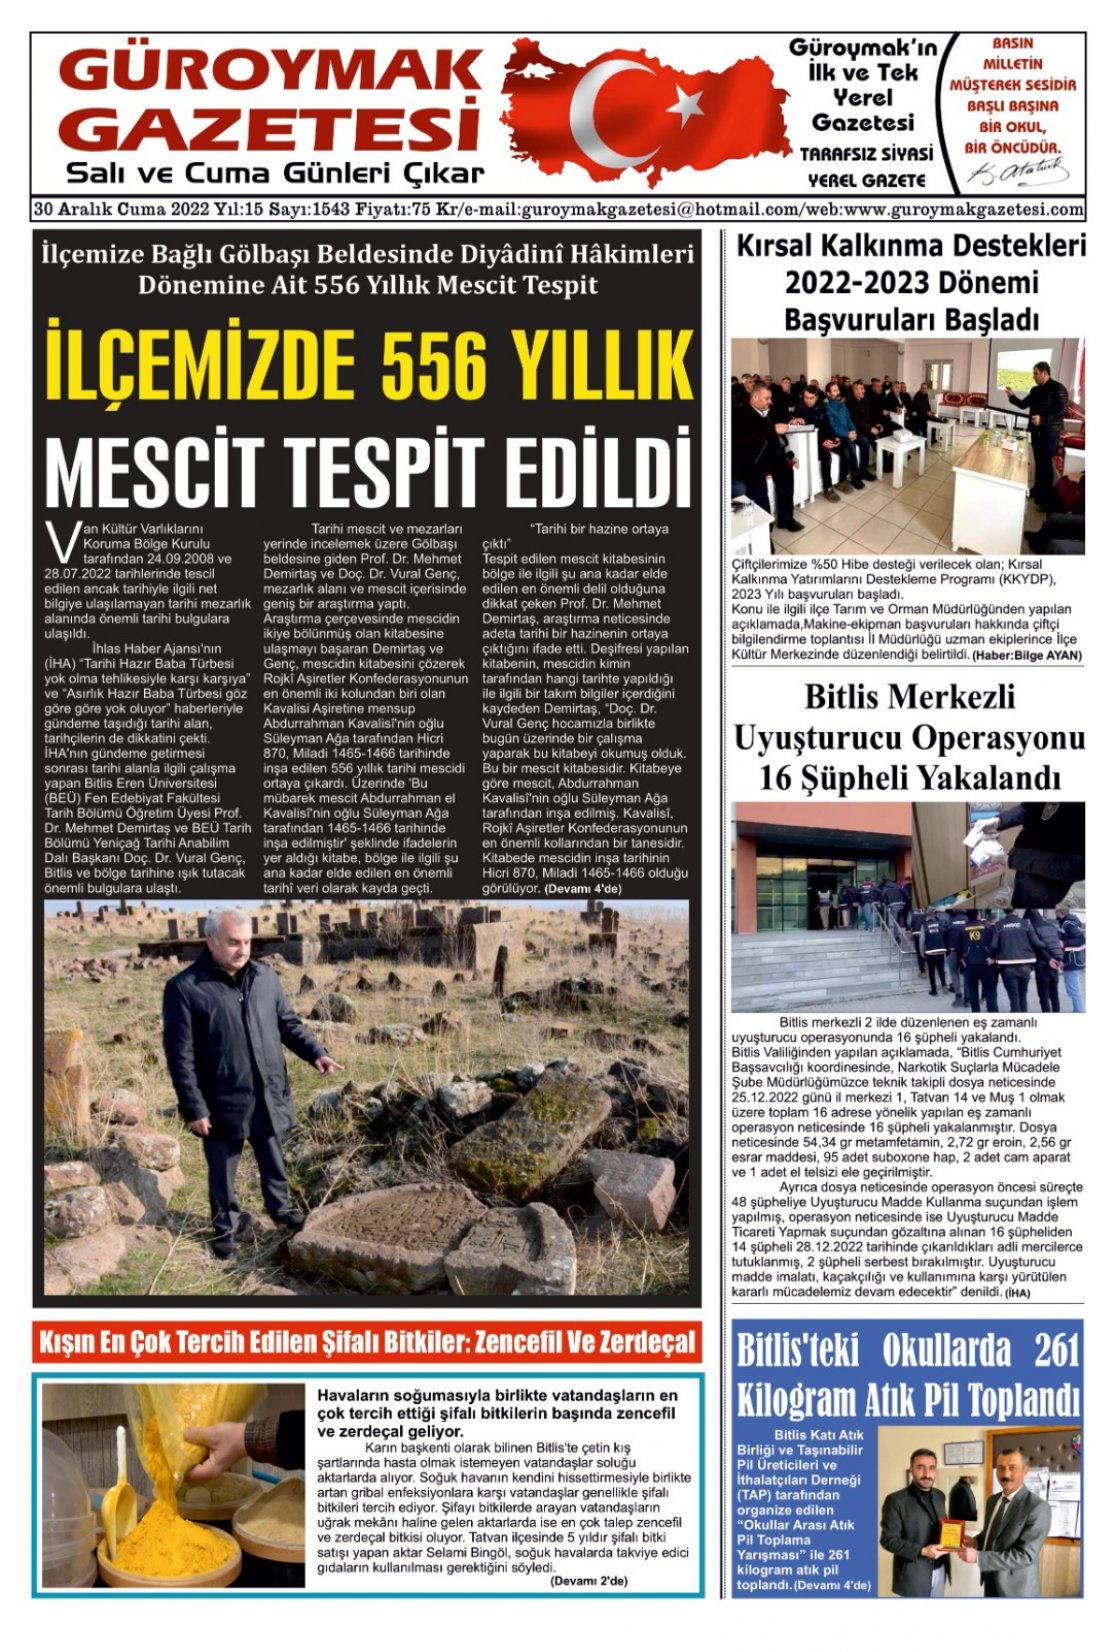 Güroymak Gazetesi WhatsApp Image 2022-12-29 at 20.47.58 (3).jpeg Sayılı Gazete Küpürü